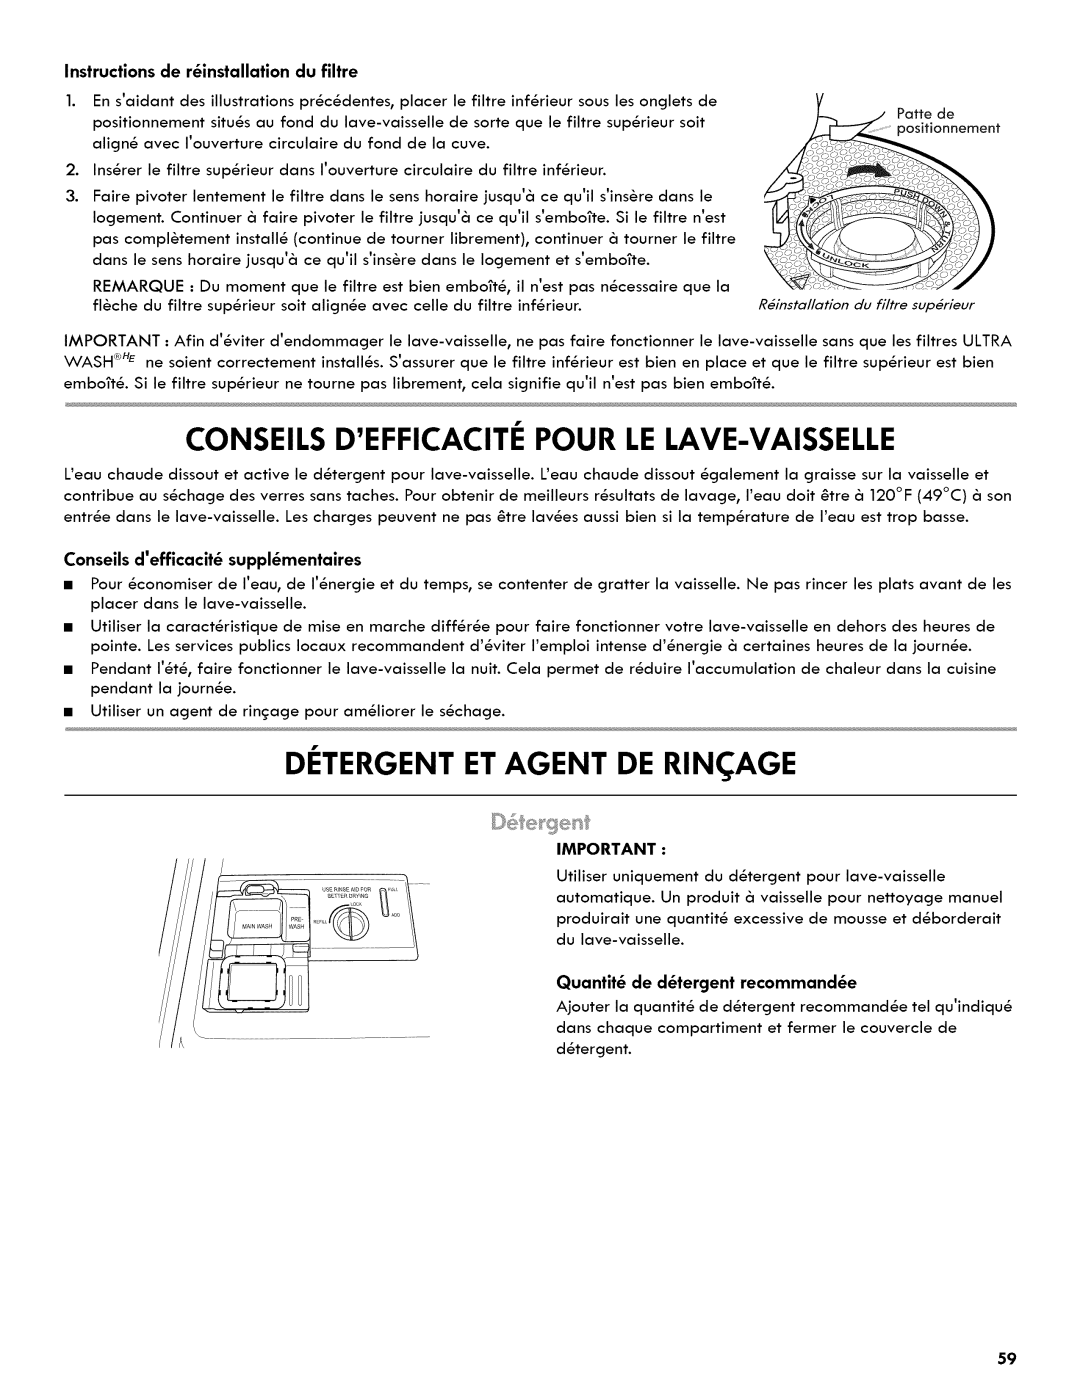 Kenmore 665.1404 manual Conseils Defficacite Pour Le Lave-Vaisselle, Detergent Et Agent De Rin Age 